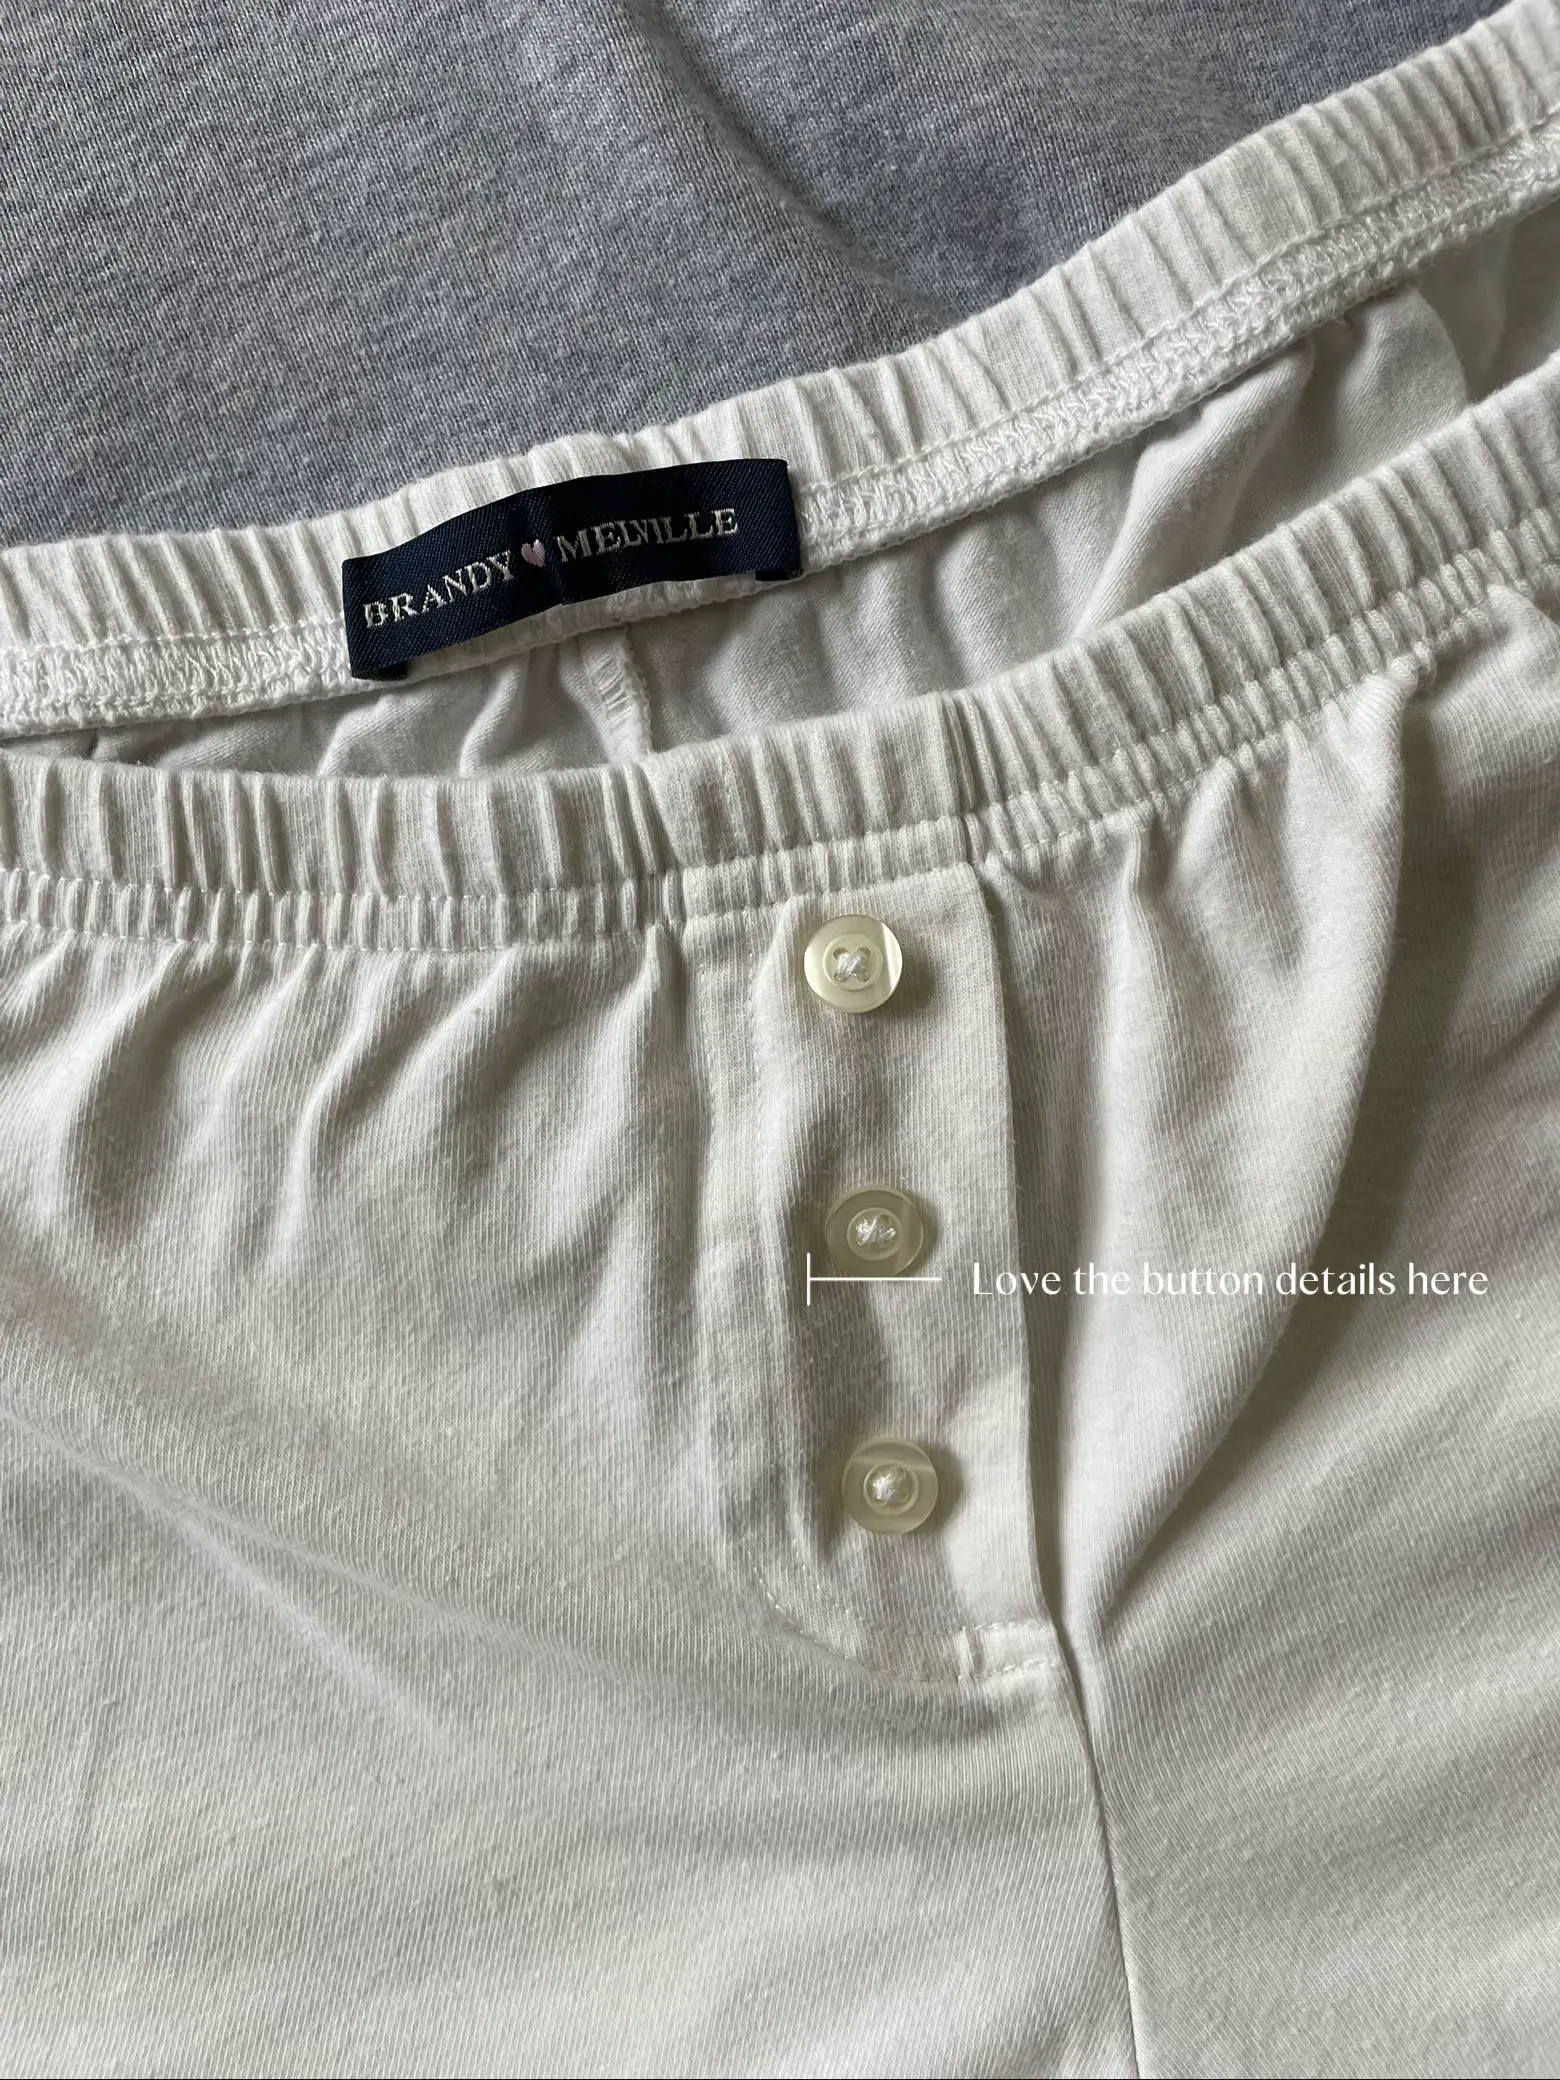 BRANDY MELVILLE Grey Long Sleeve 3 Button Henley Top Junior Size OS